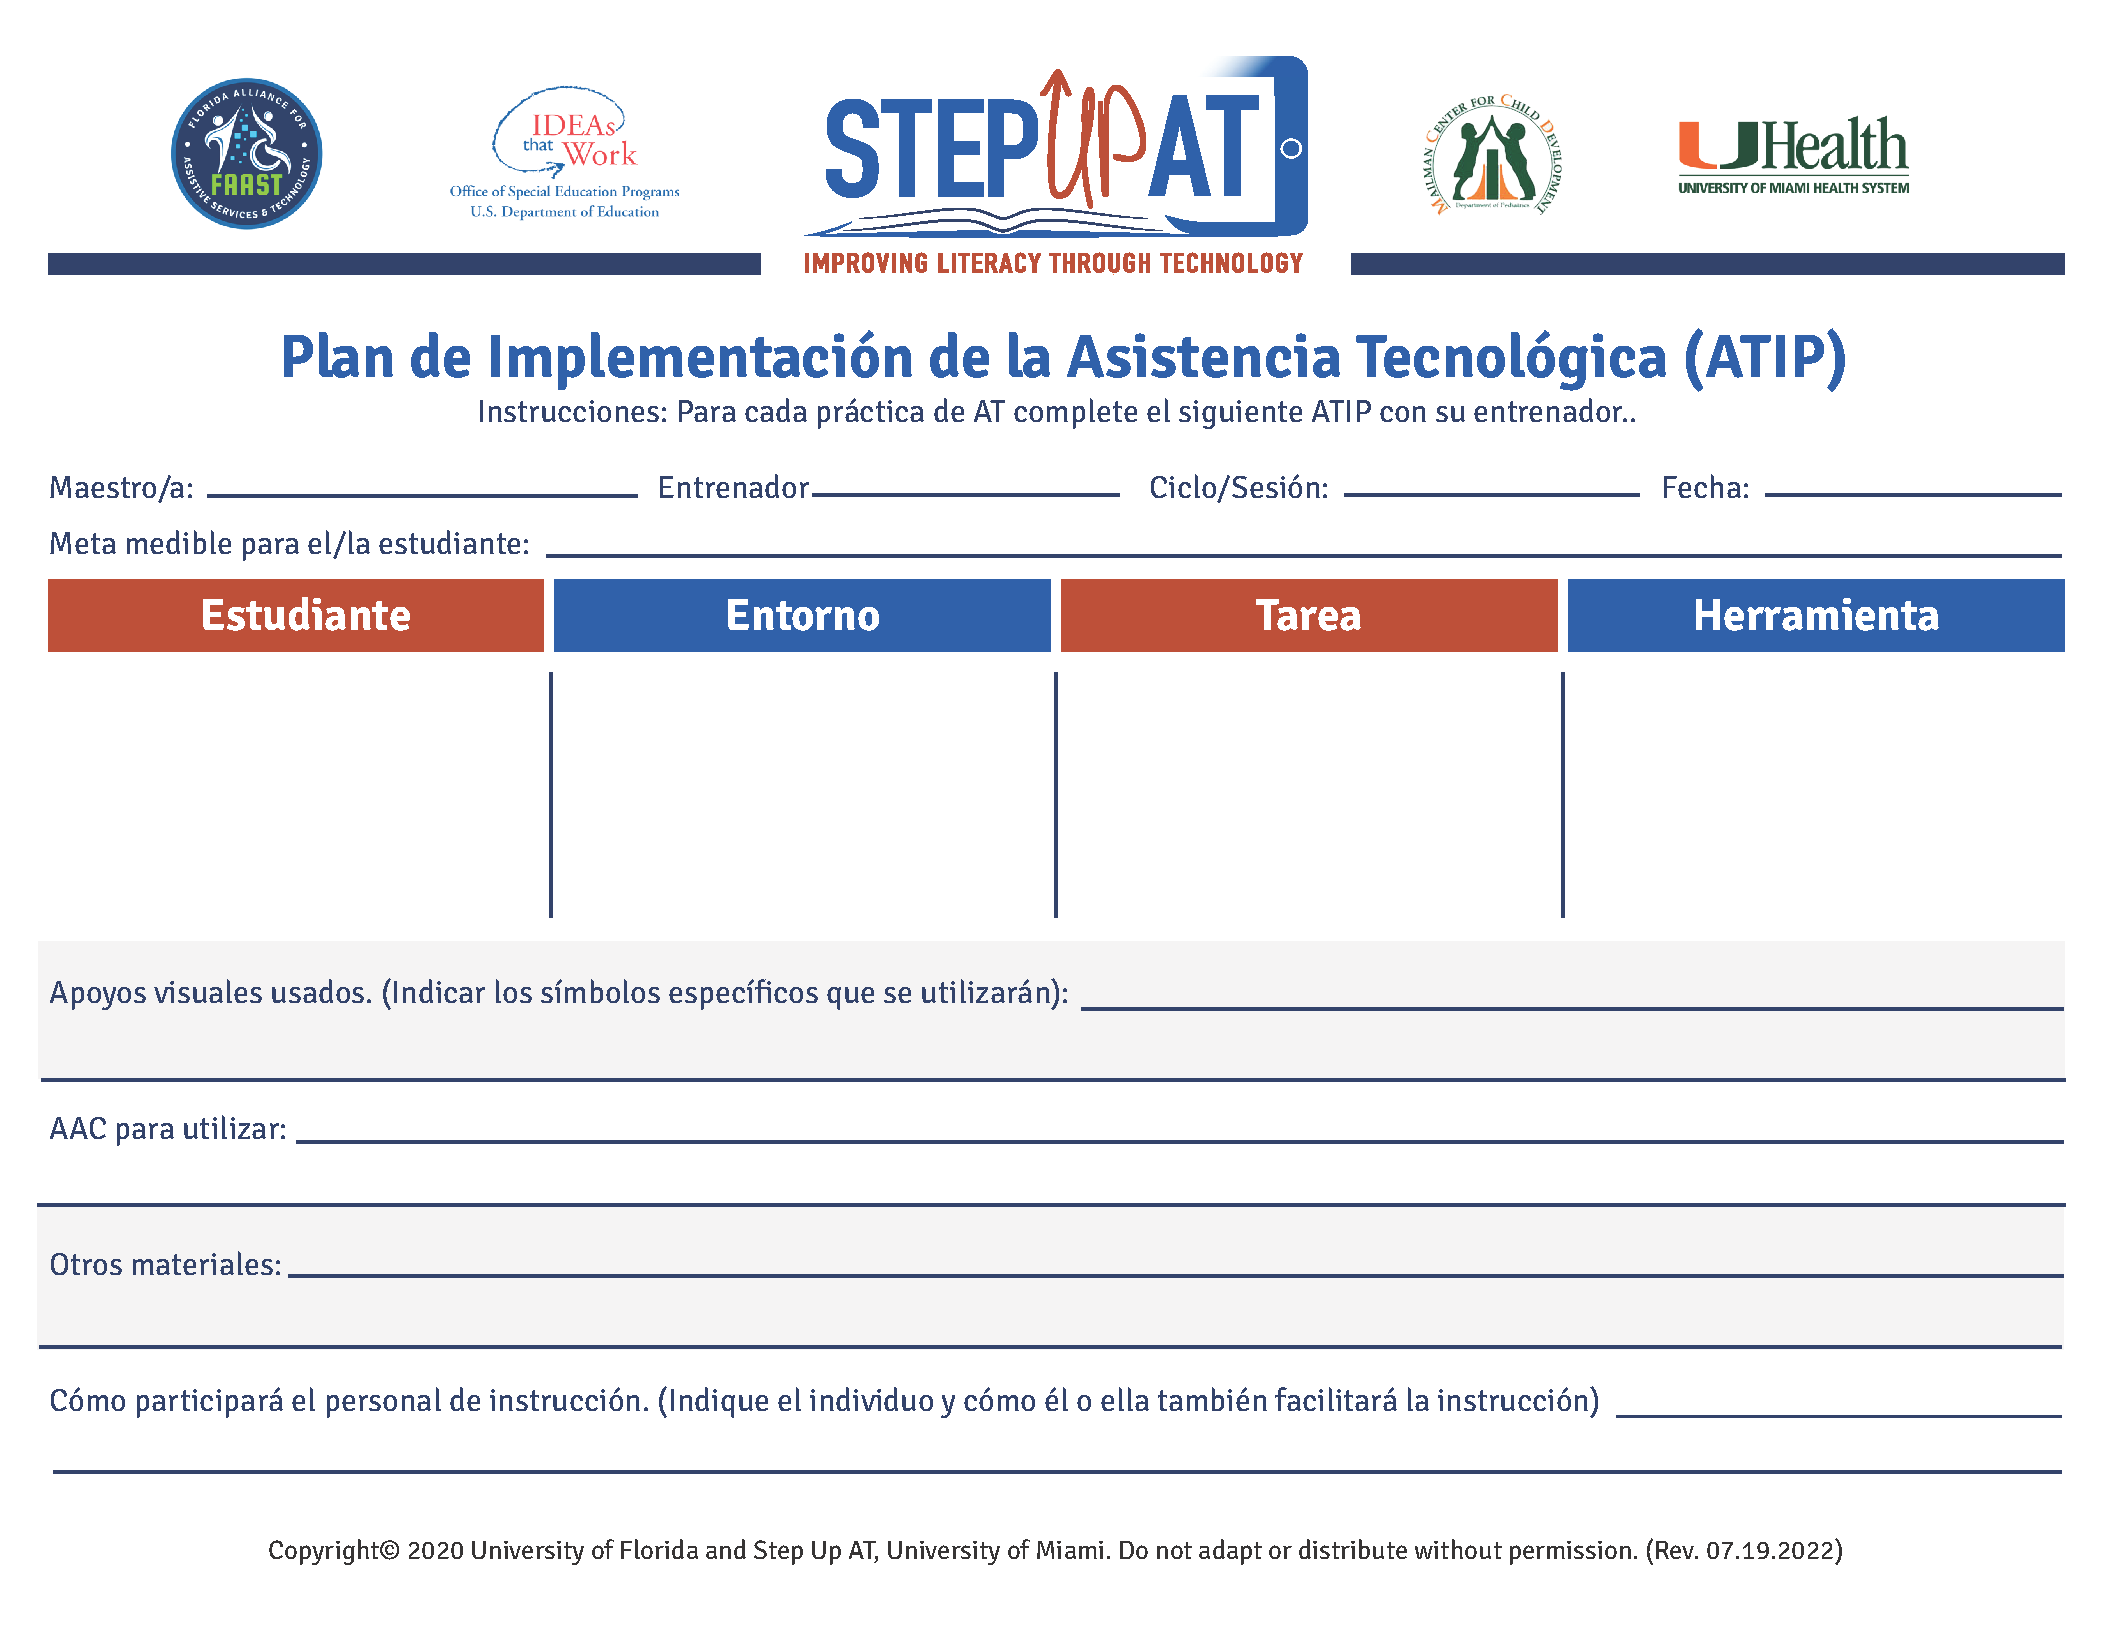 ATIP in Spanish. Plan de Implementacion de la Asistencia Tecnologica (ATIP).